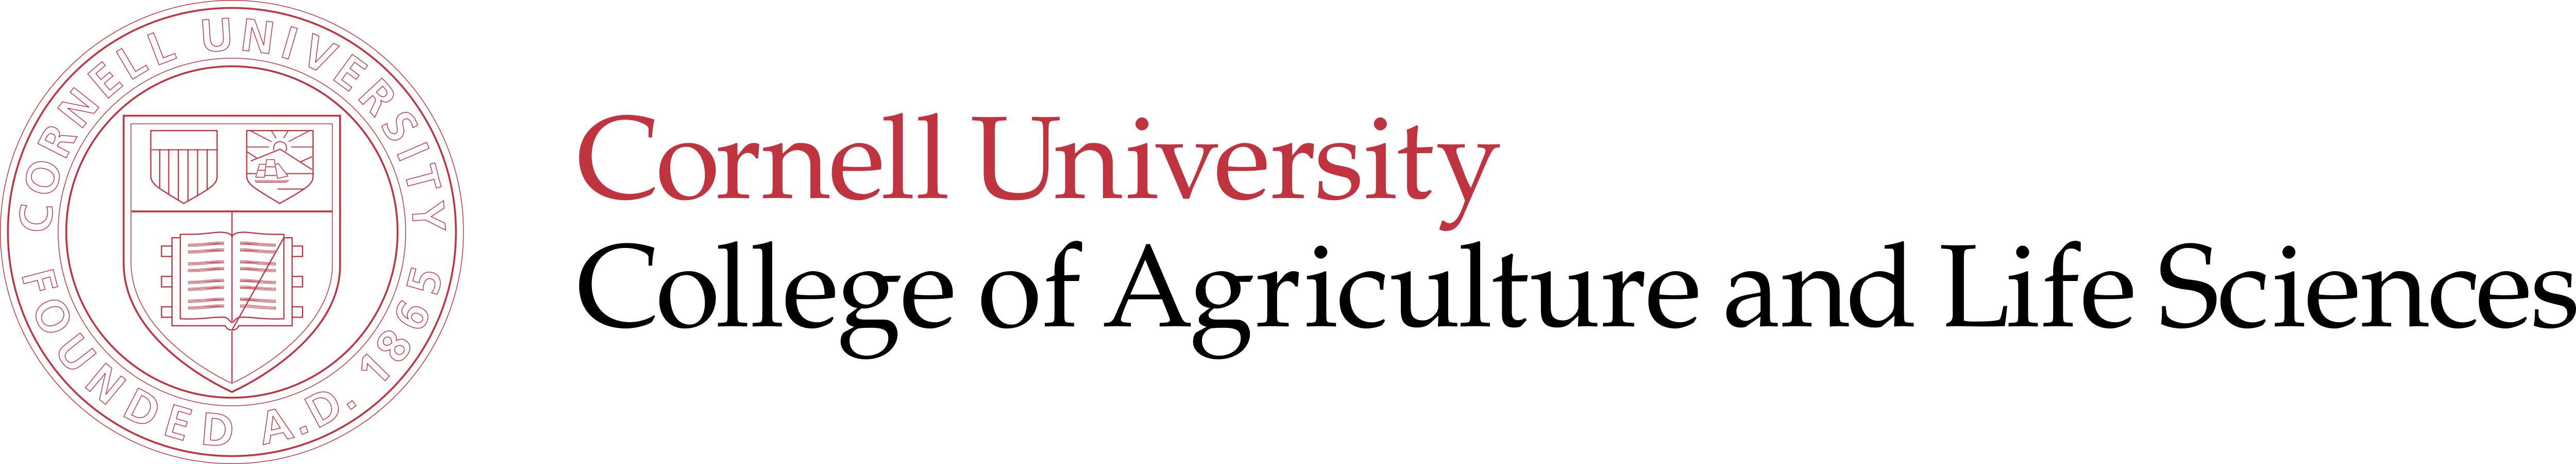 Cornell University Logo Old Full 